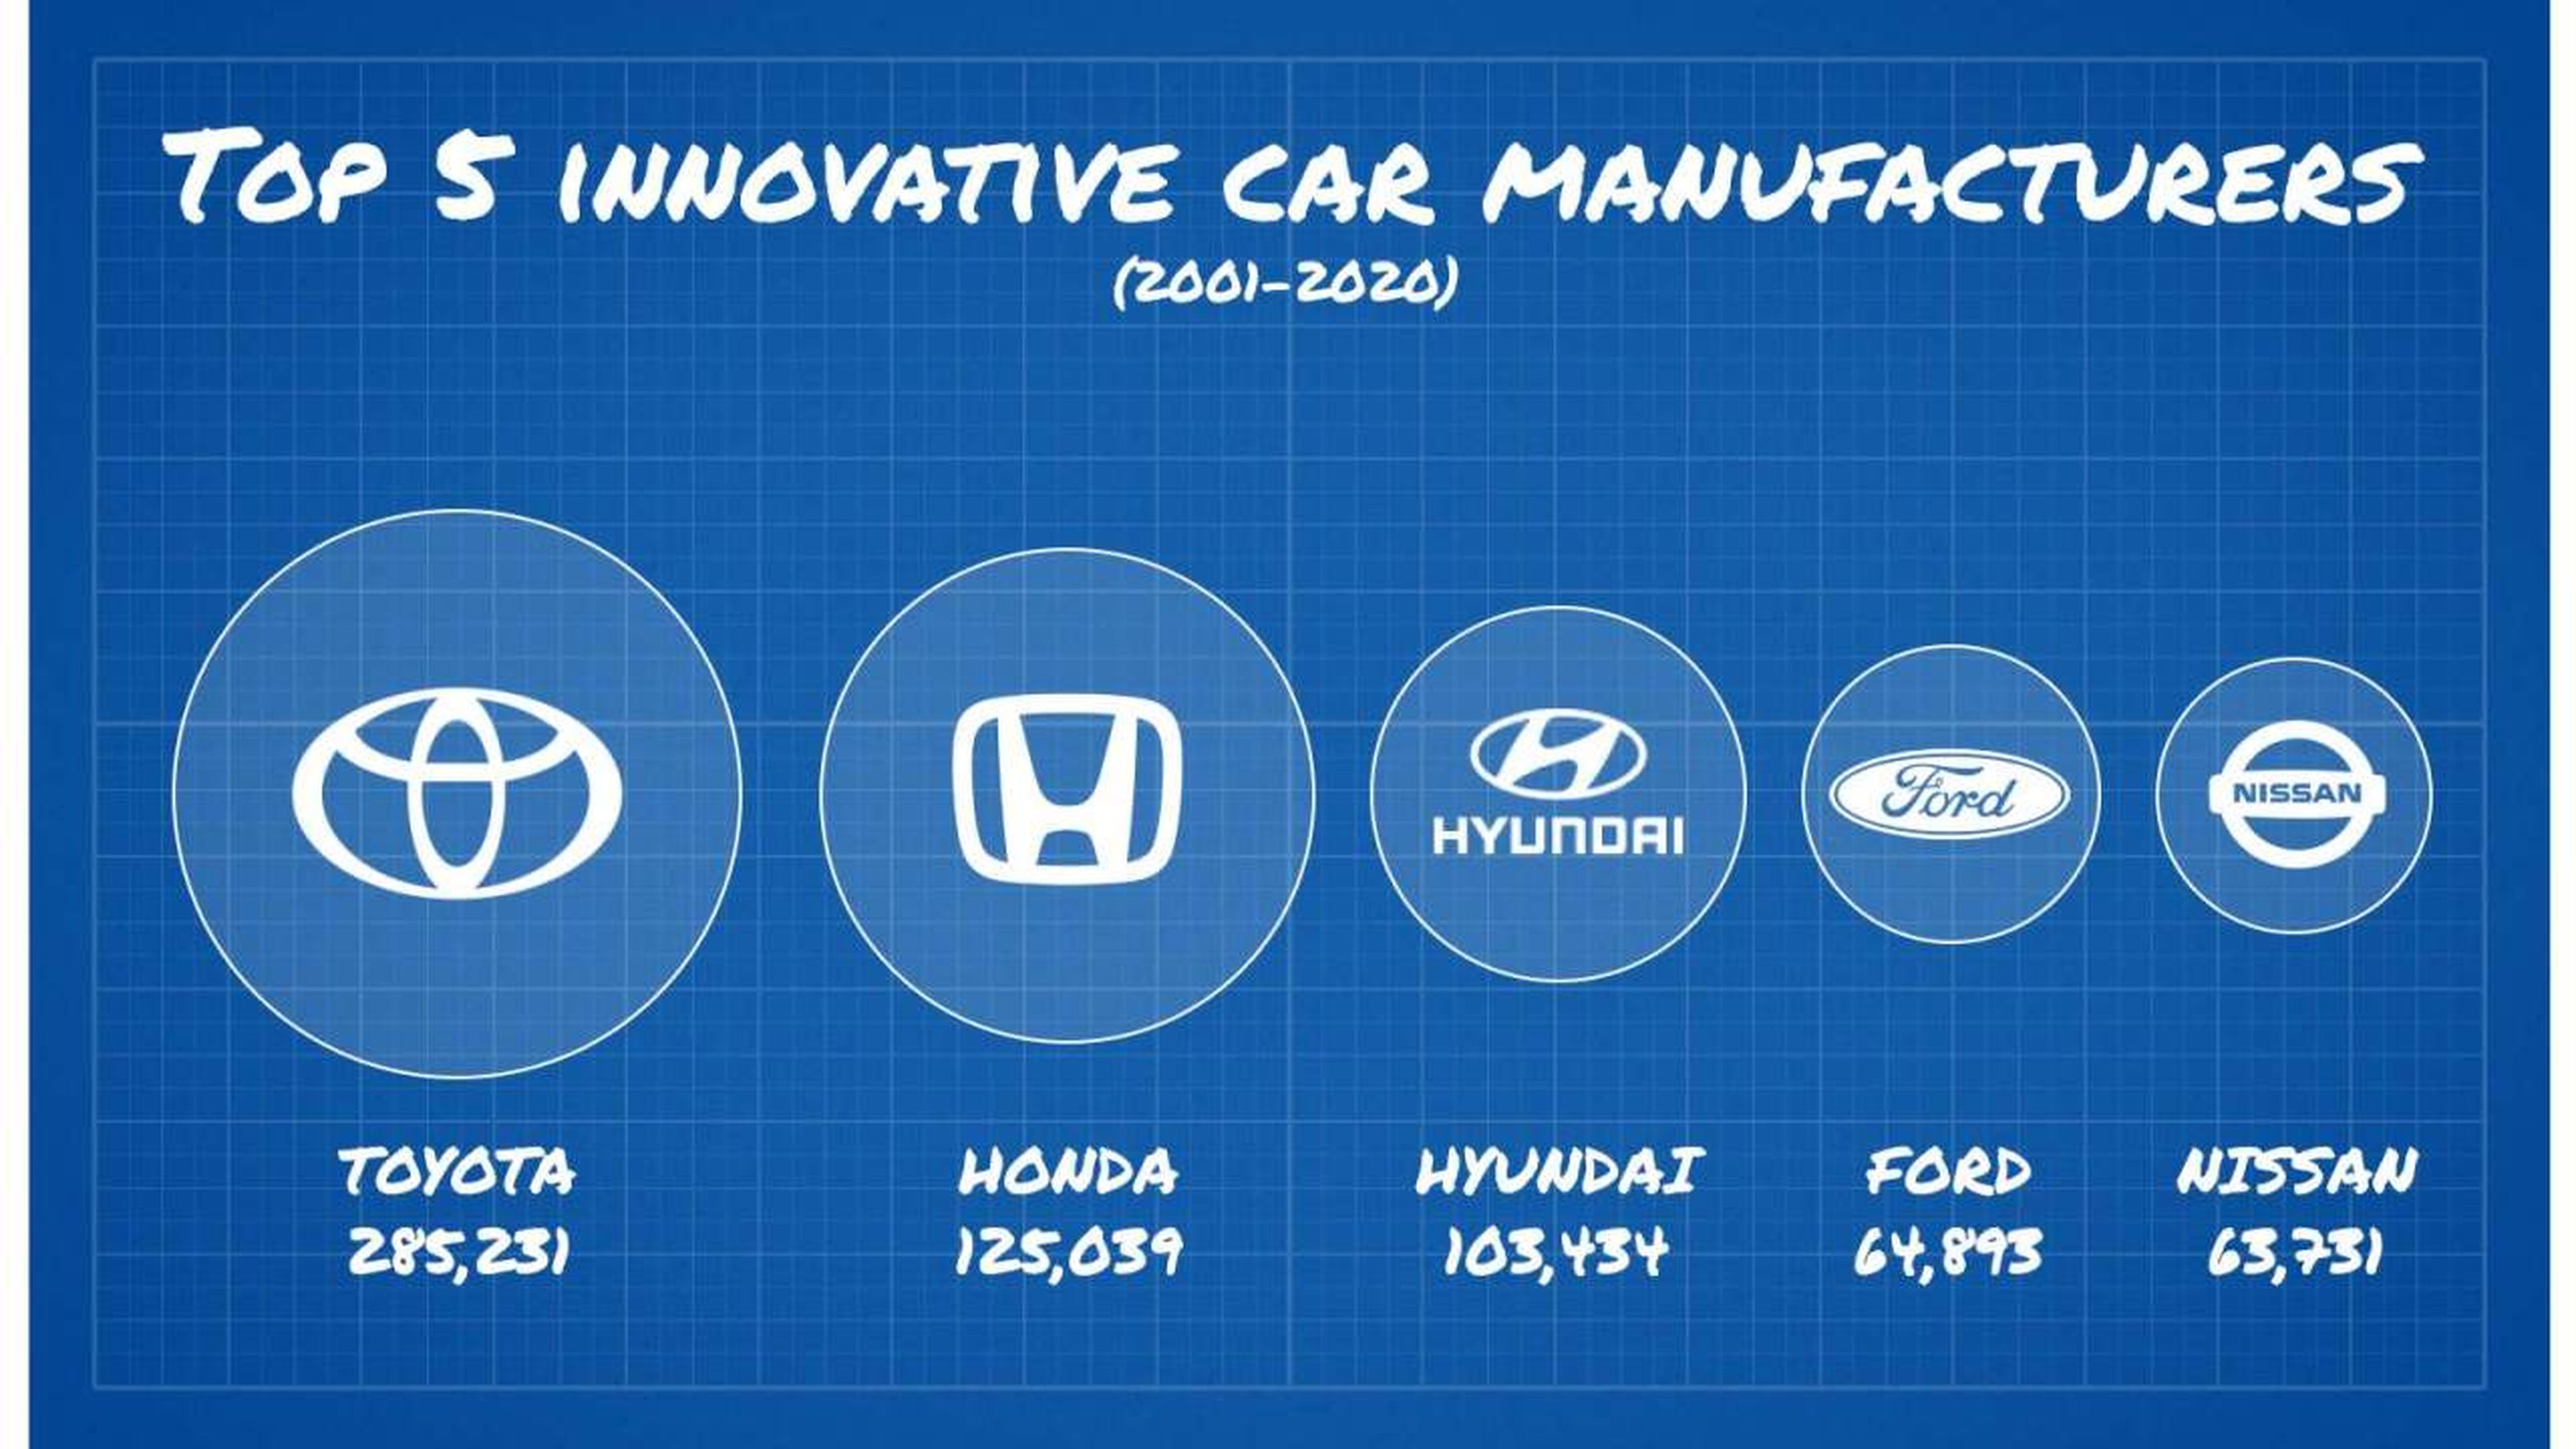 marcas coches mas innovadoras historia